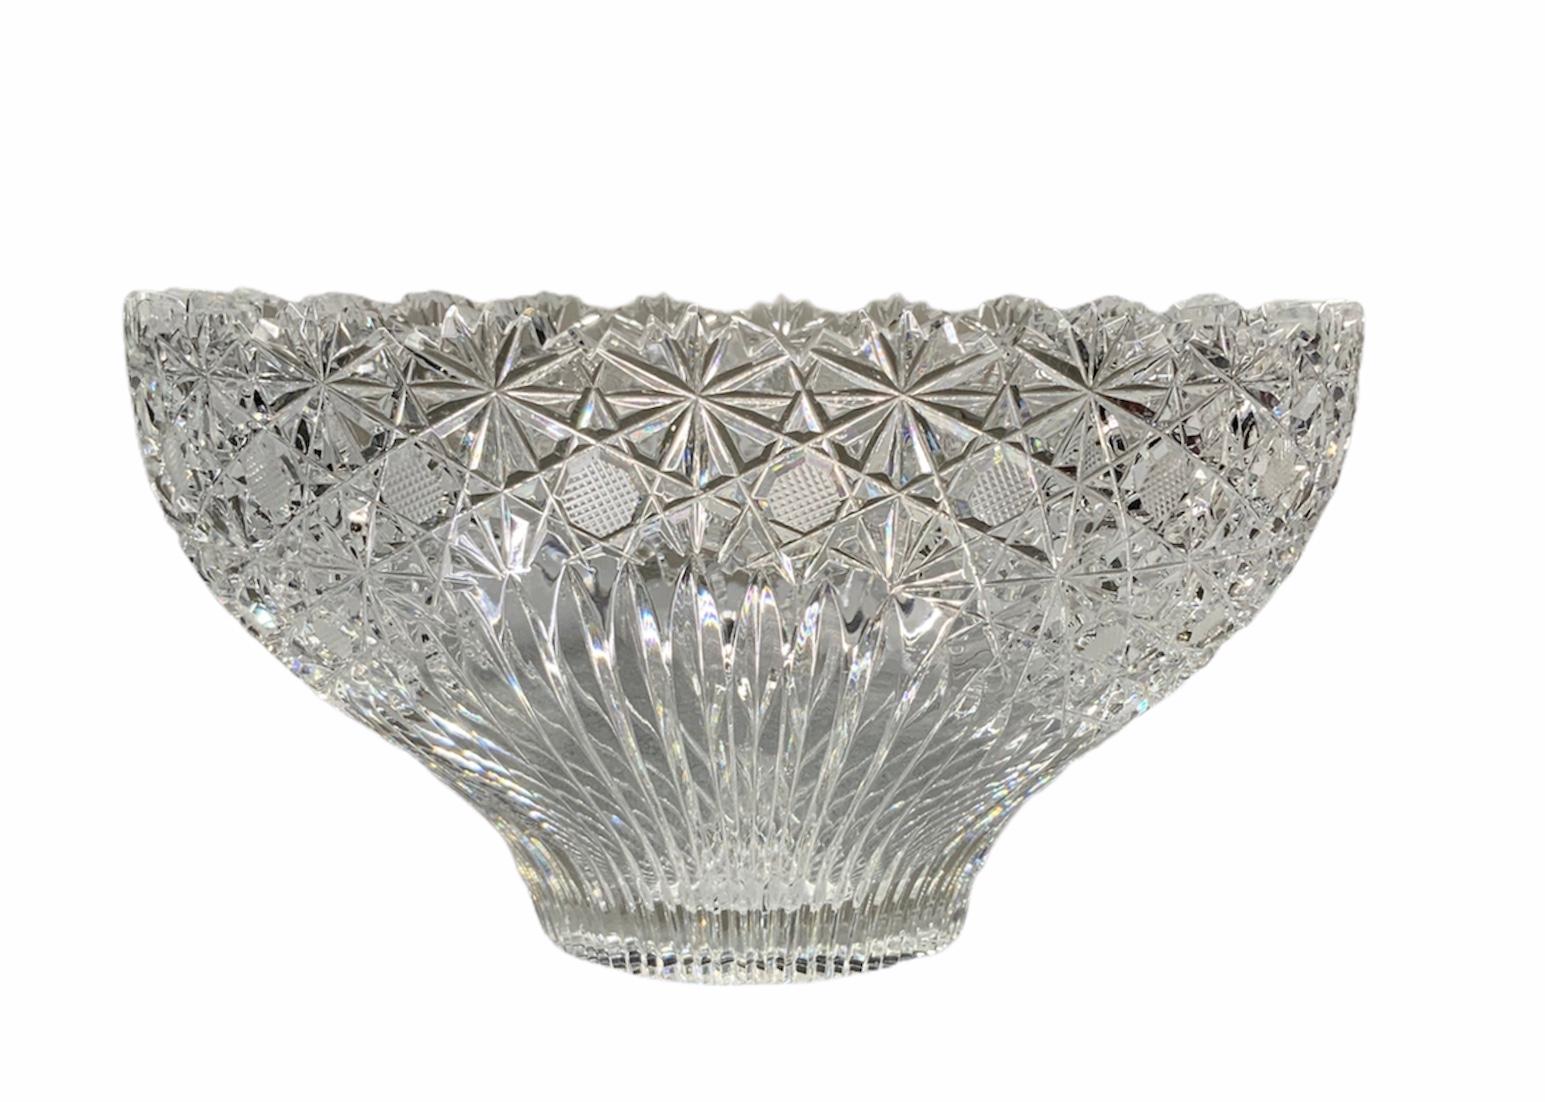 20th Century American Brilliant Cut Glass Crystal Bowl